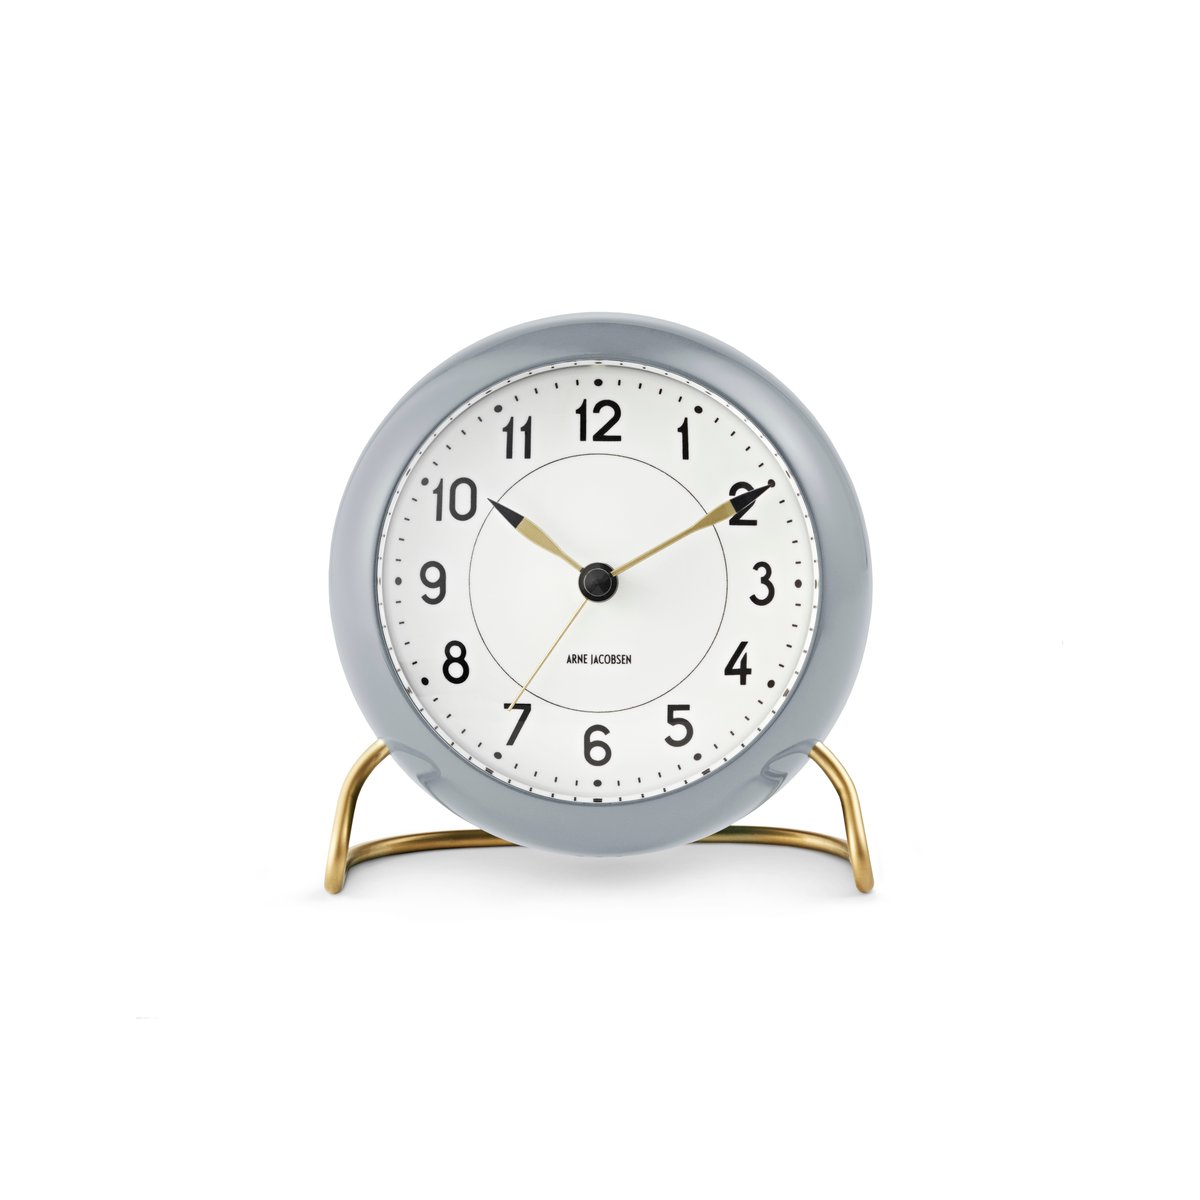 Arne Jacobsen Clocks AJ Station bordsur 12 cm grå-hvid (5709513436744)